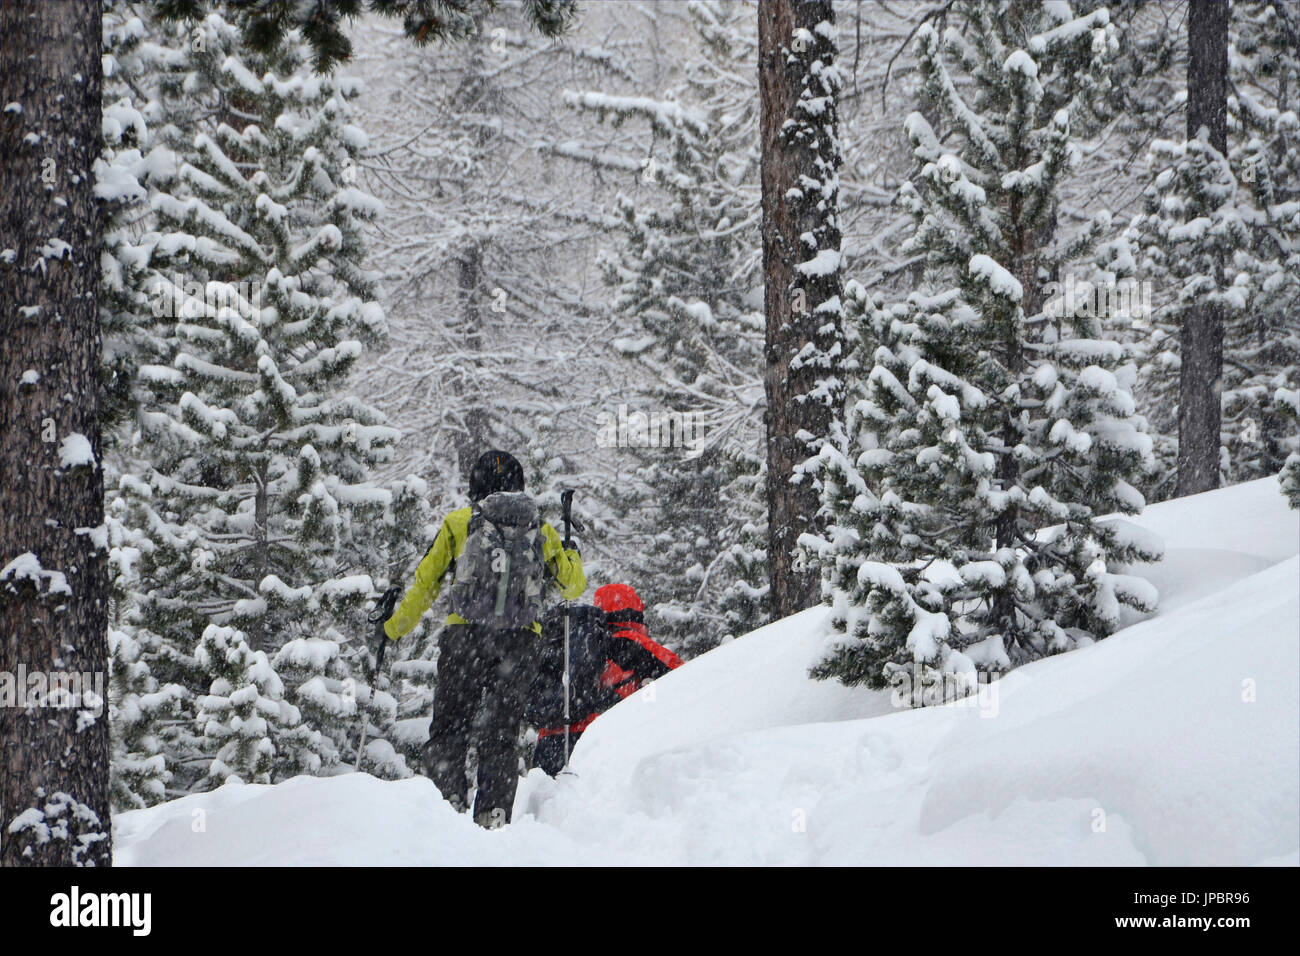 Ski alpinisme (marche) dans la forêt alors qu'il neige, Nevache, France Banque D'Images